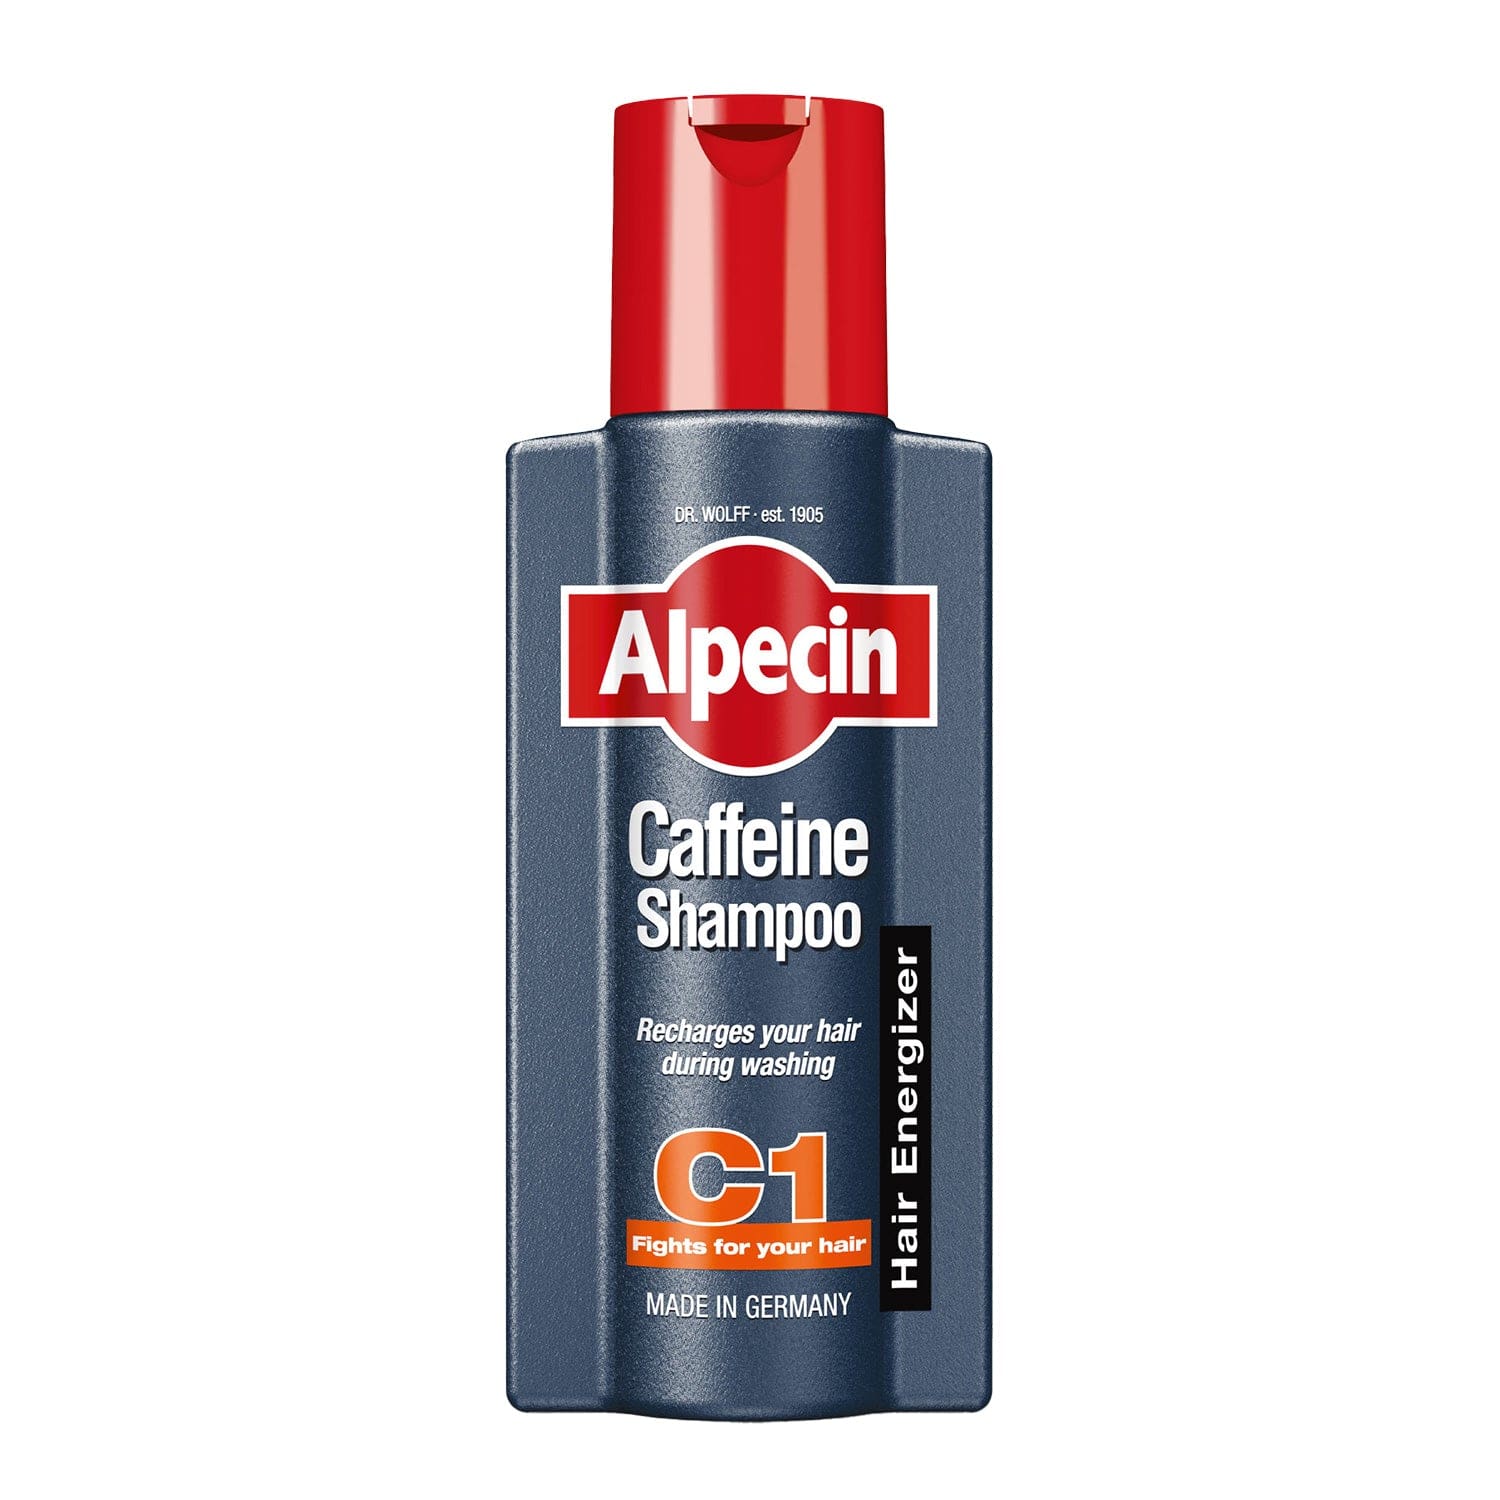 Alpecin Caffeine Shampoo C1 helps hair feel stronger